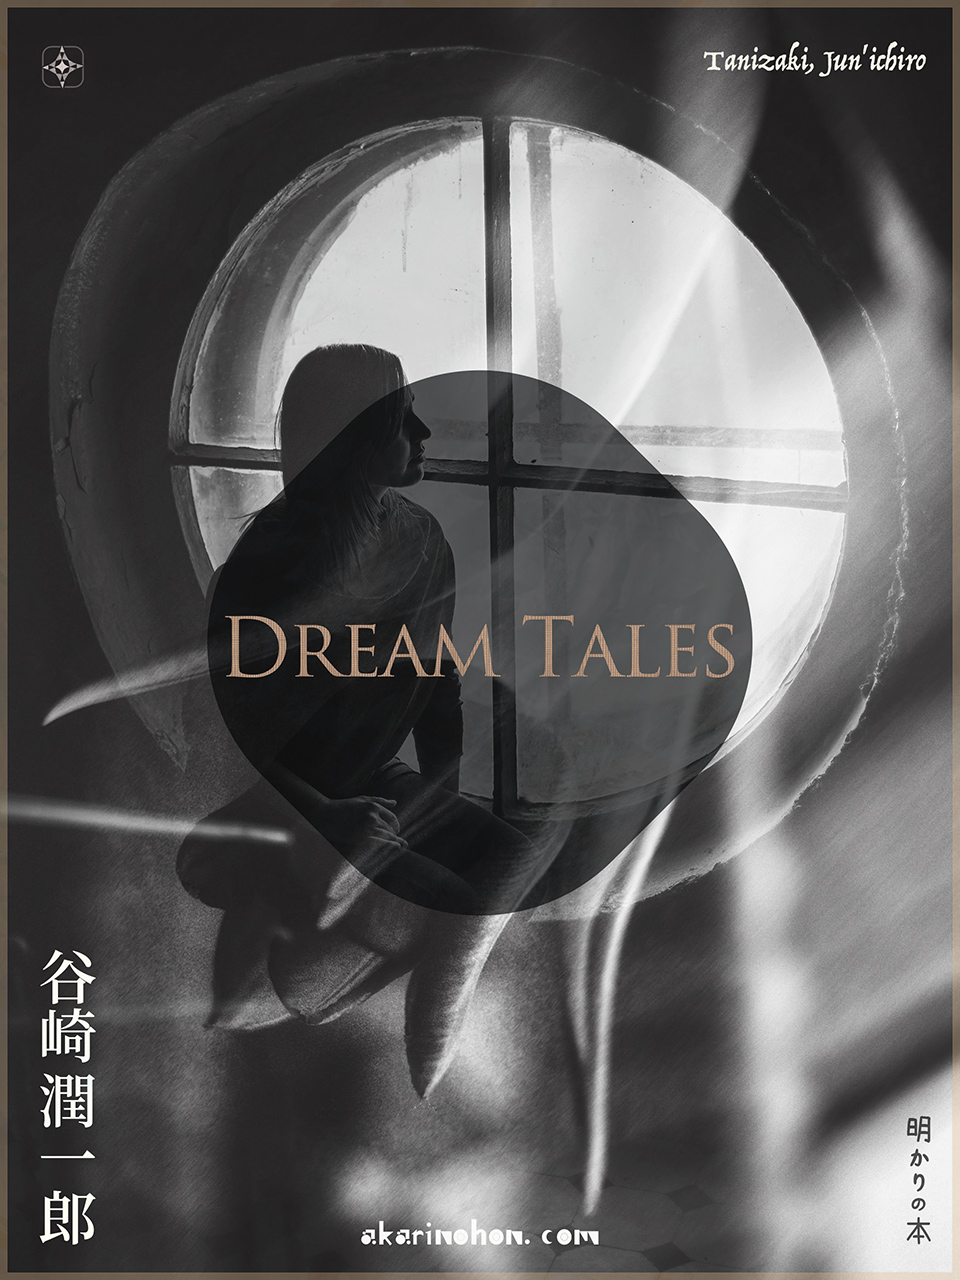 0000 - Dream Tales 谷崎潤一郎